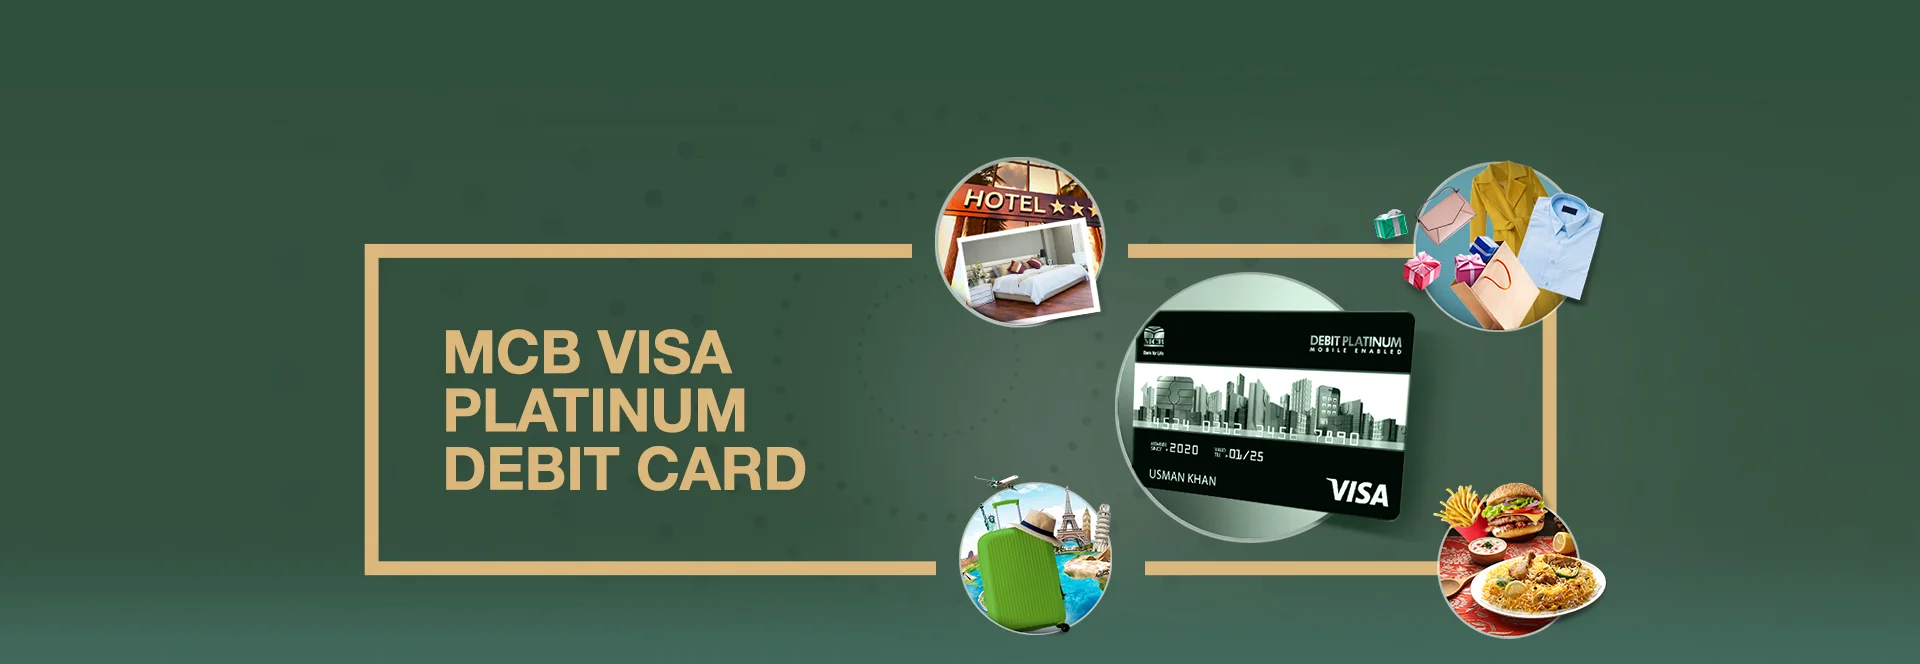 MCB Visa Platinum Debit Card